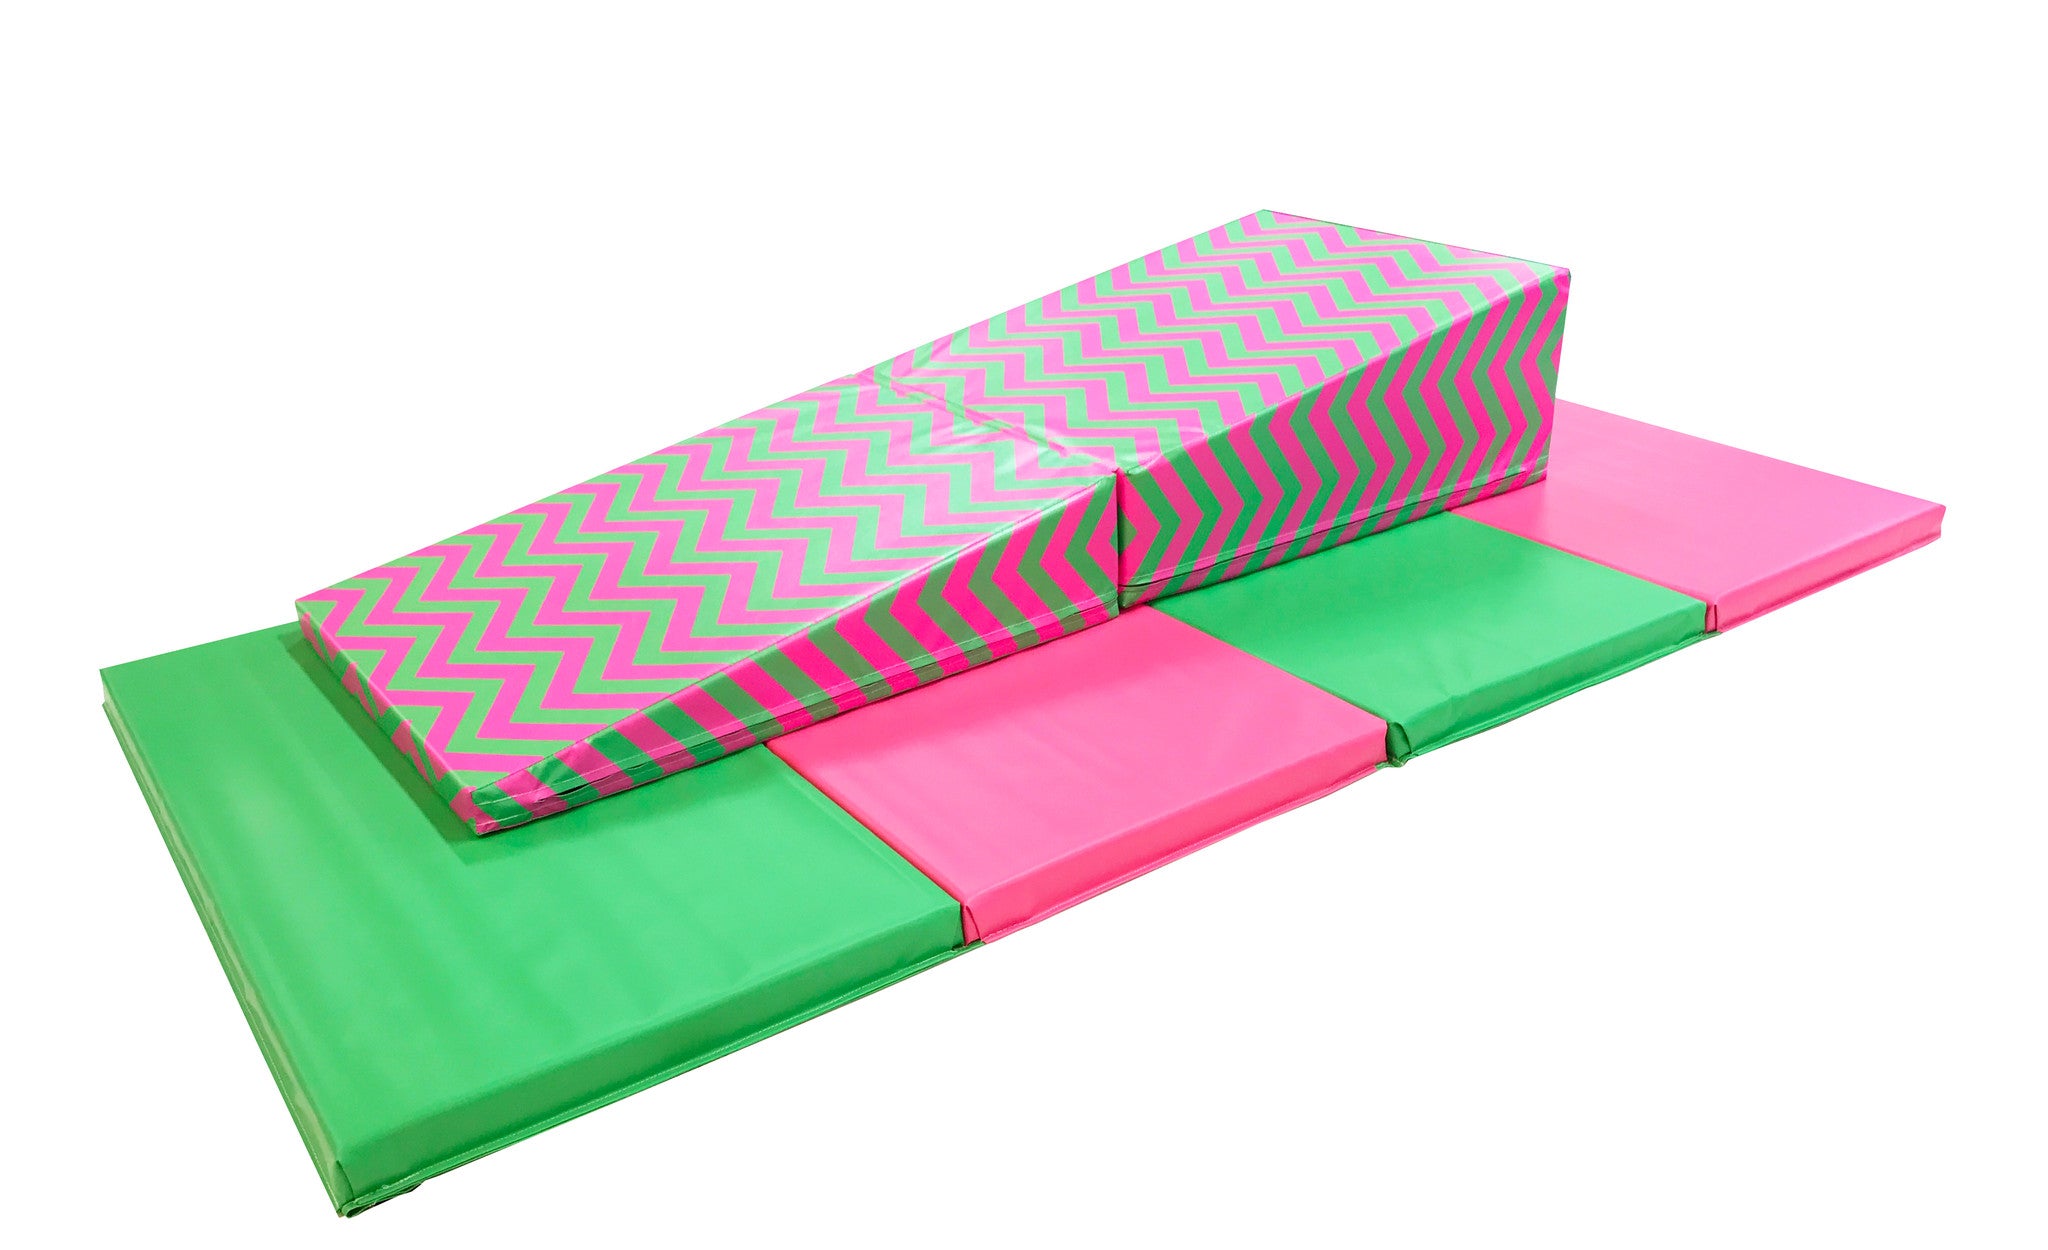 fold up gymnastics mat